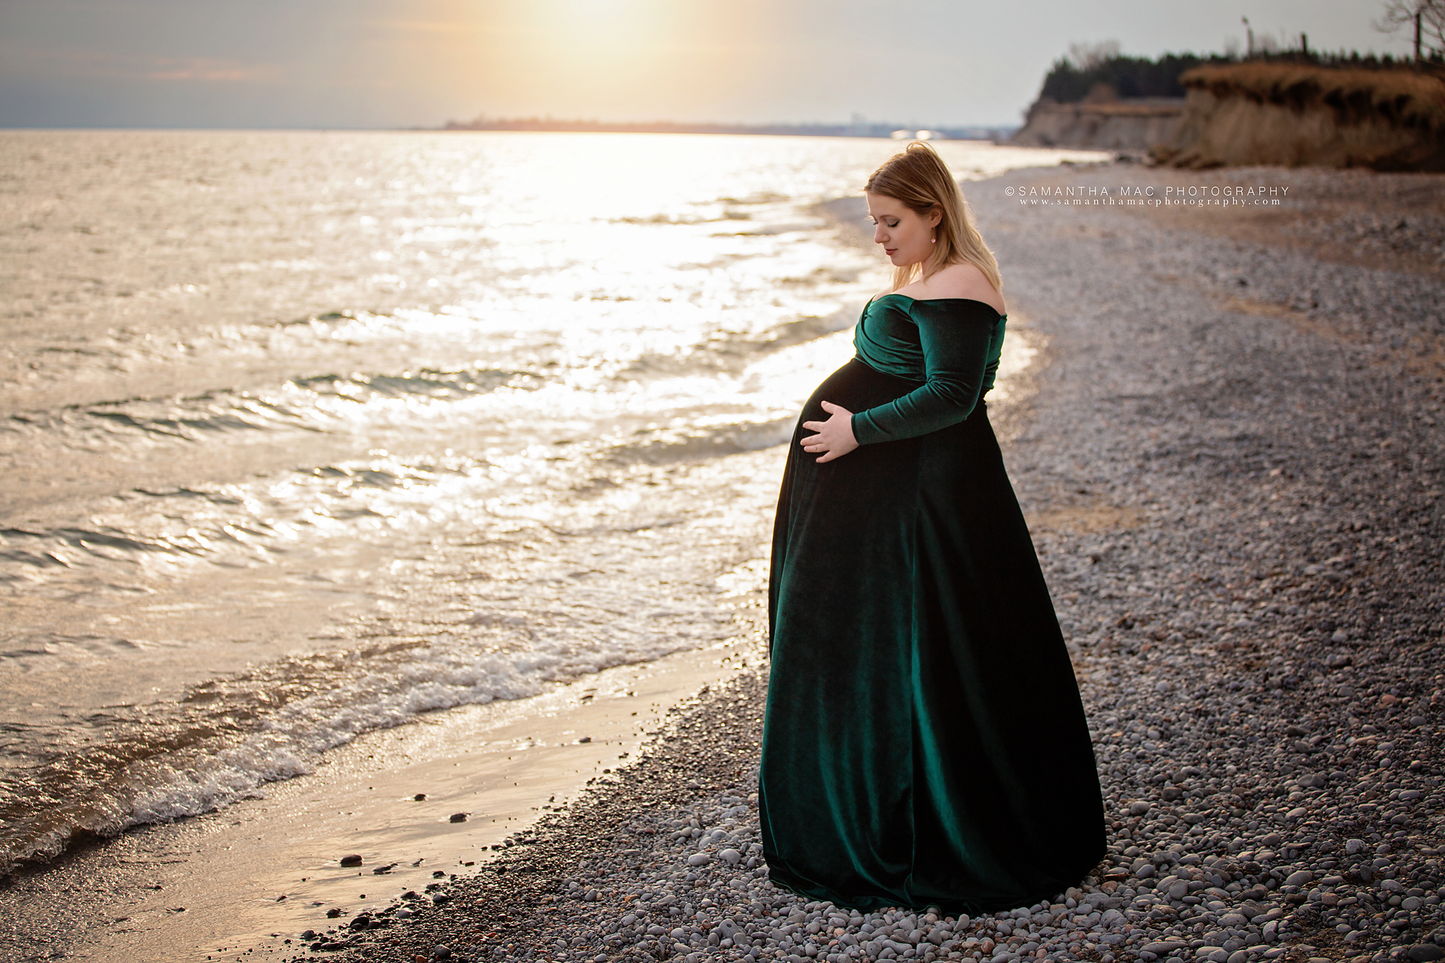 Green Velvet Maternity Gown - maternity photoshoot dress